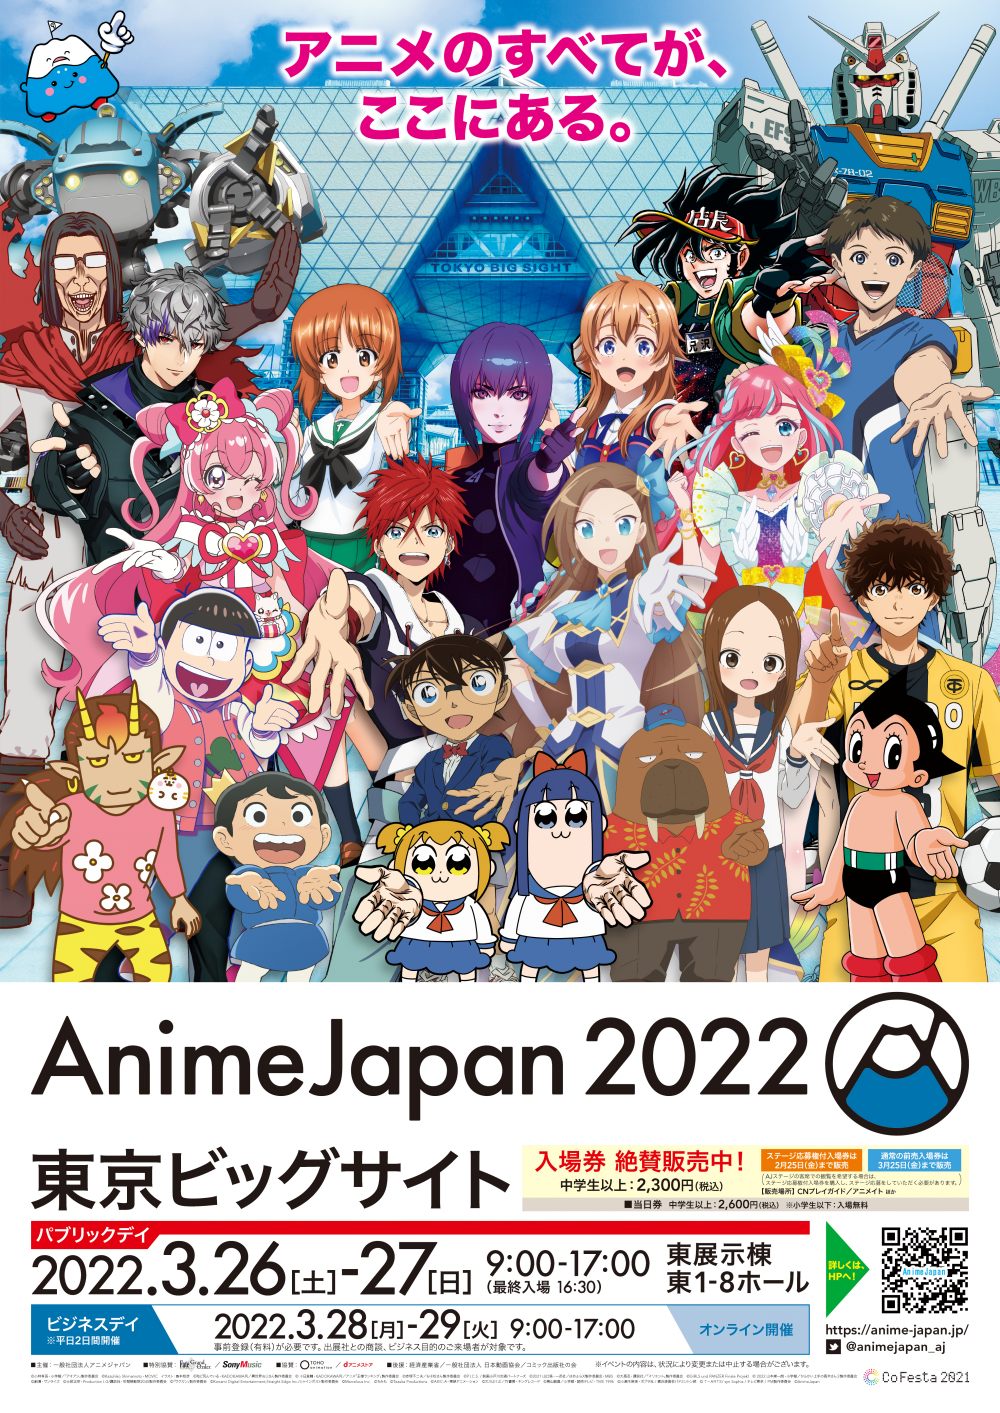 【画像】AnimeJapan 2022 キービジュアル